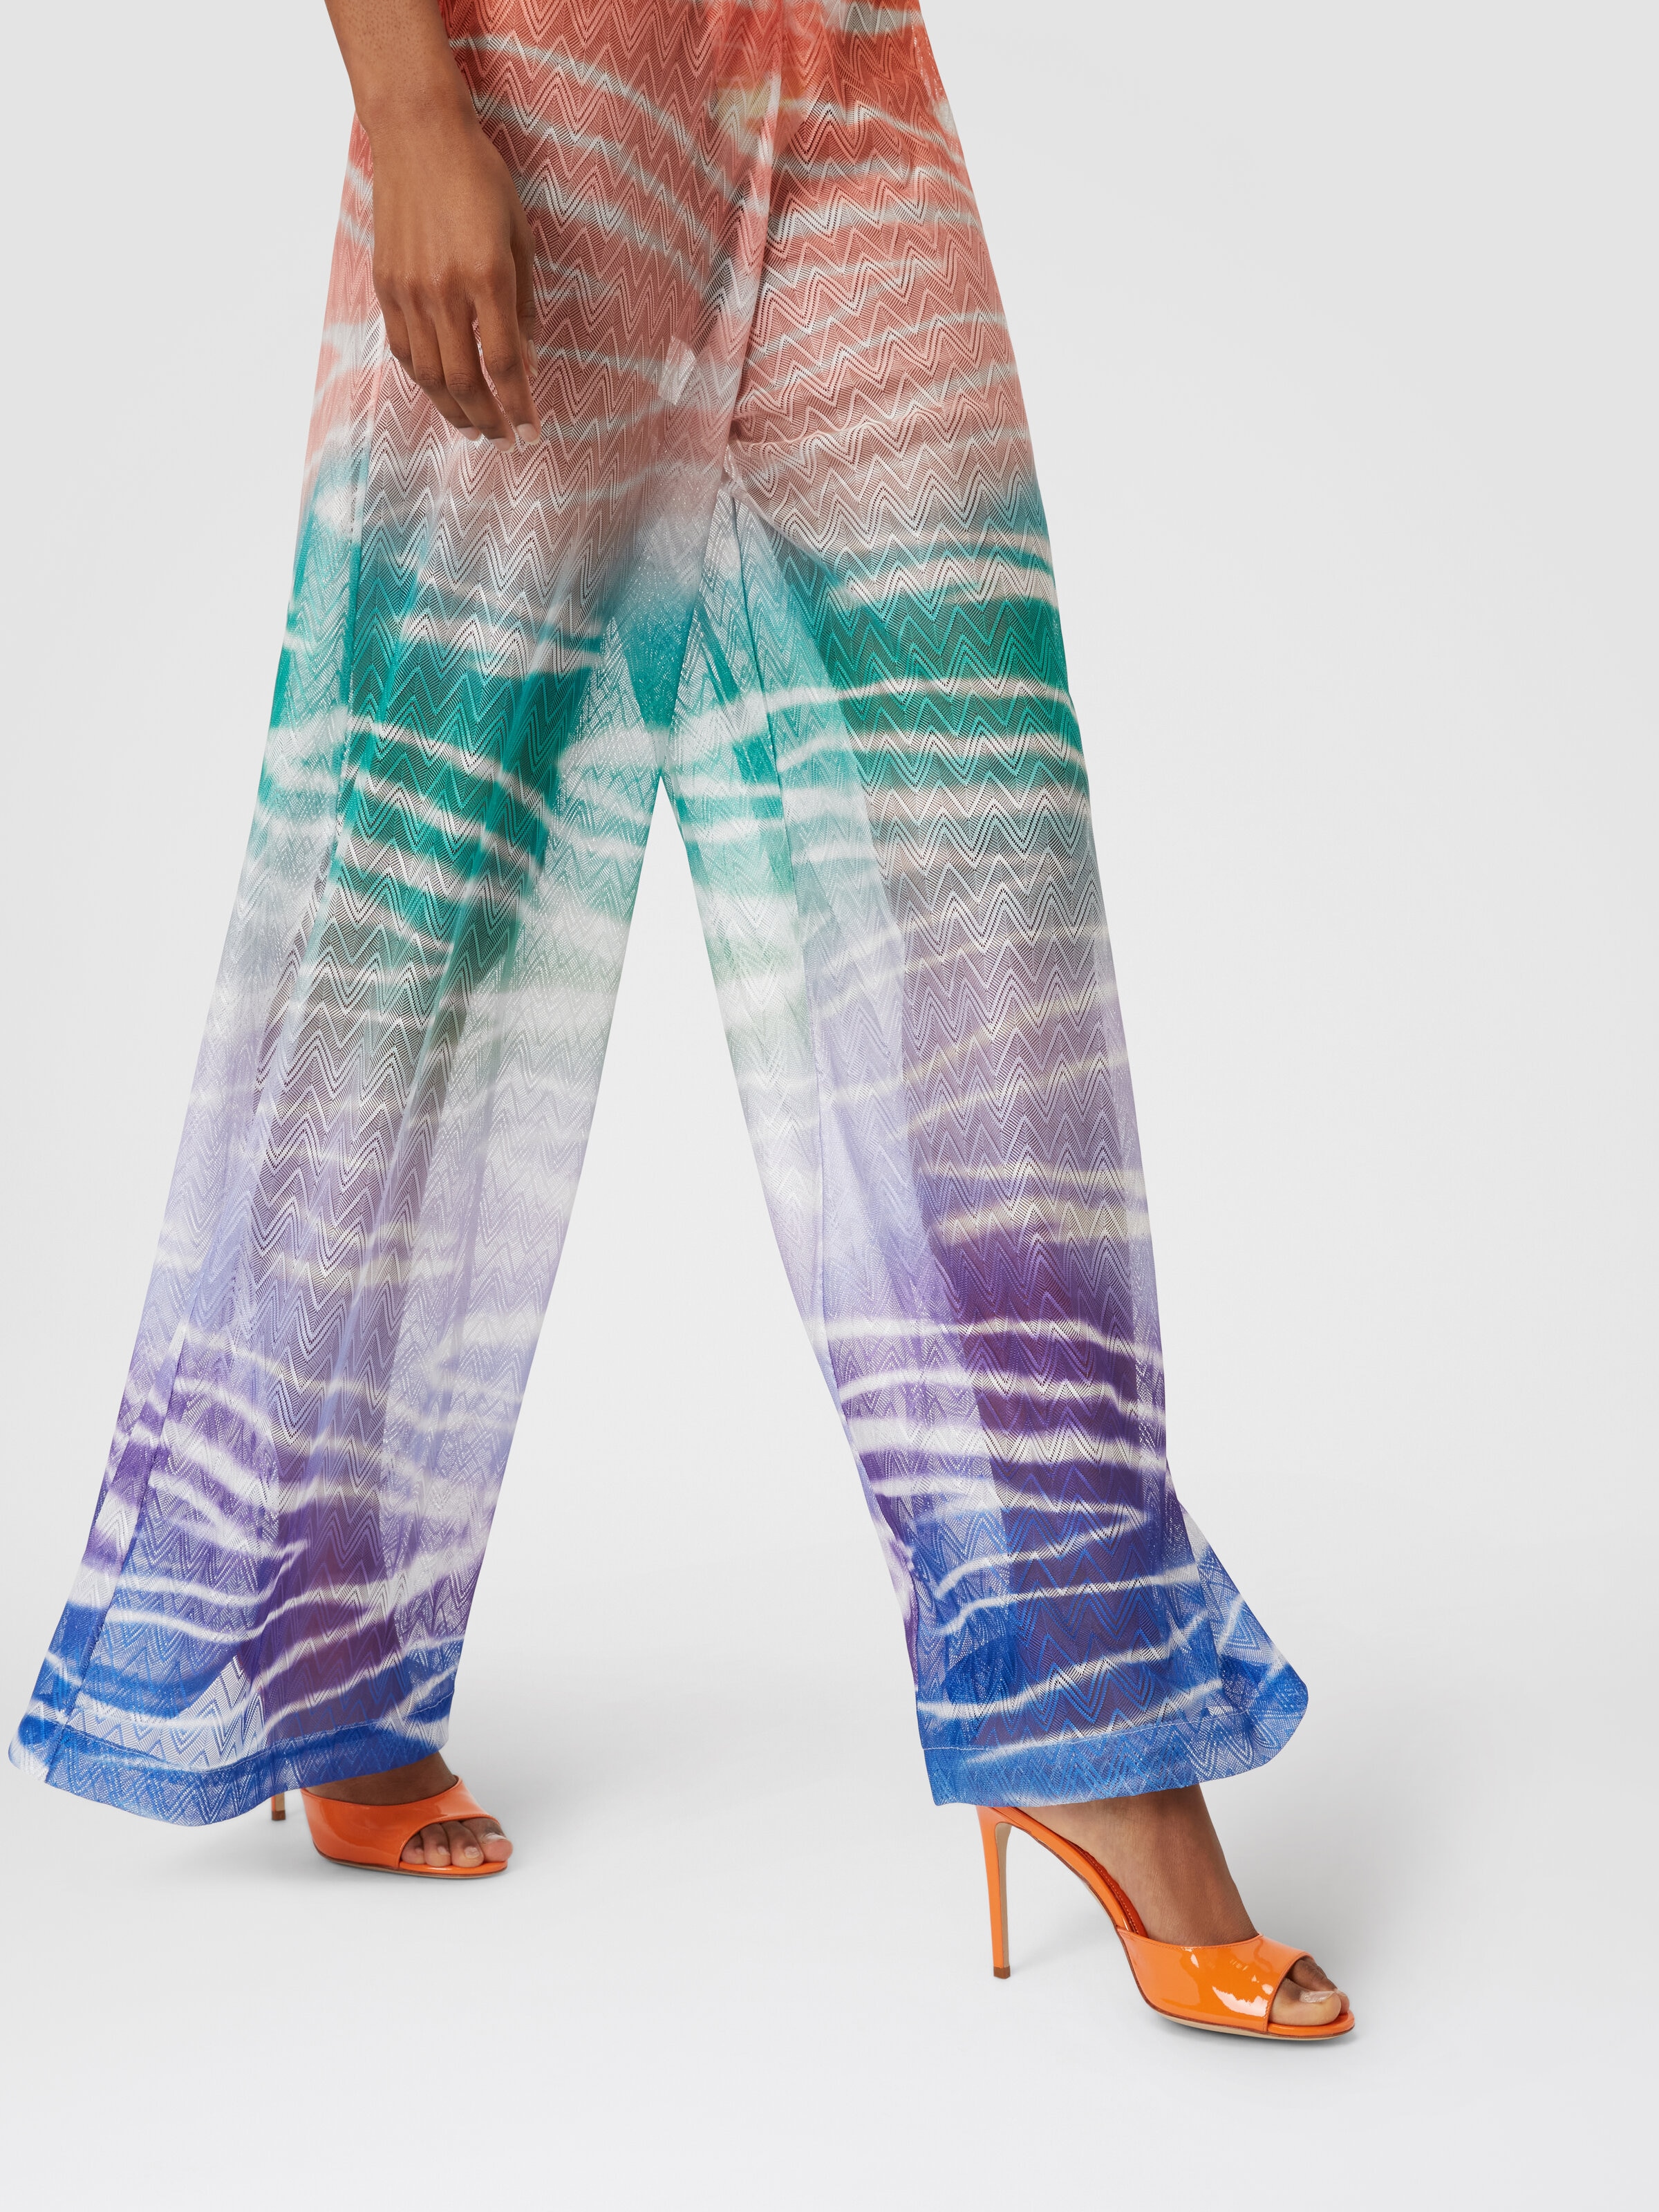 Hose zum Überziehen am Strand mit Tie-Dye-Print, Mehrfarbig  - 4